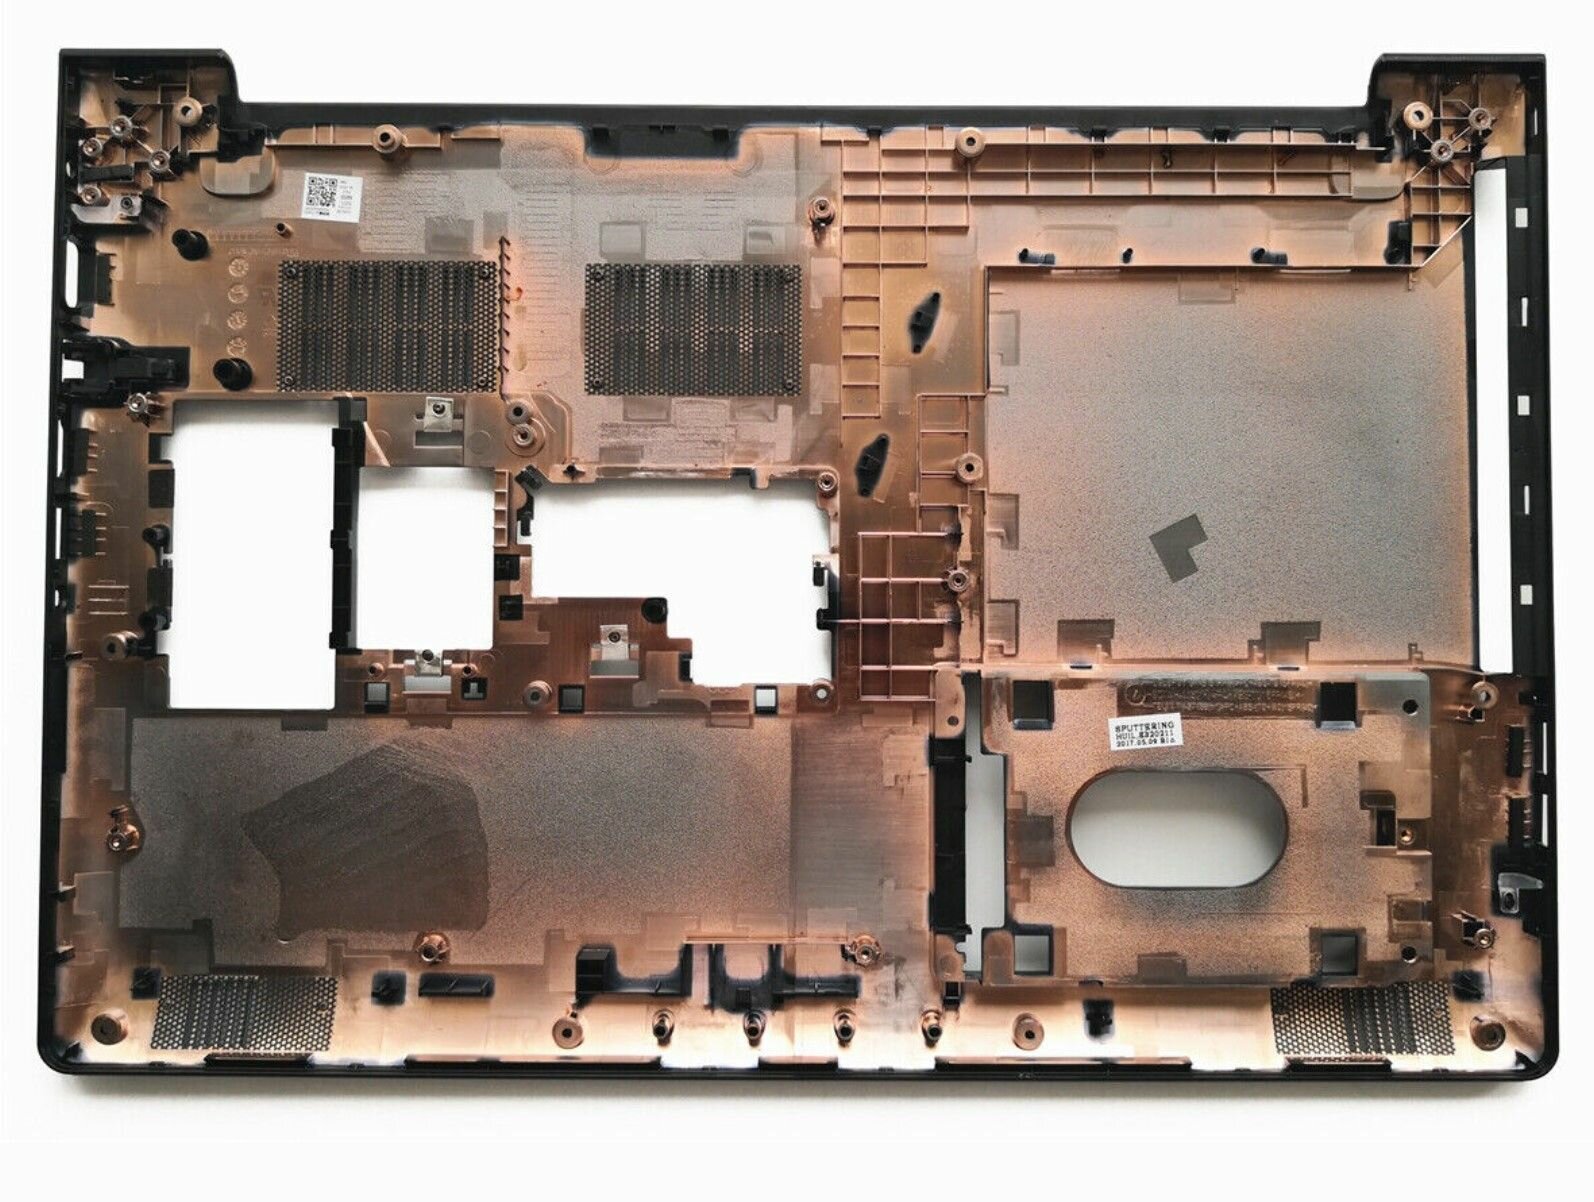 Поддон для ноутбука Lenovo IdeaPad 310-15ISK 310-15IKB 310-15ABR 510-15ISK (нижняя часть корпуса)